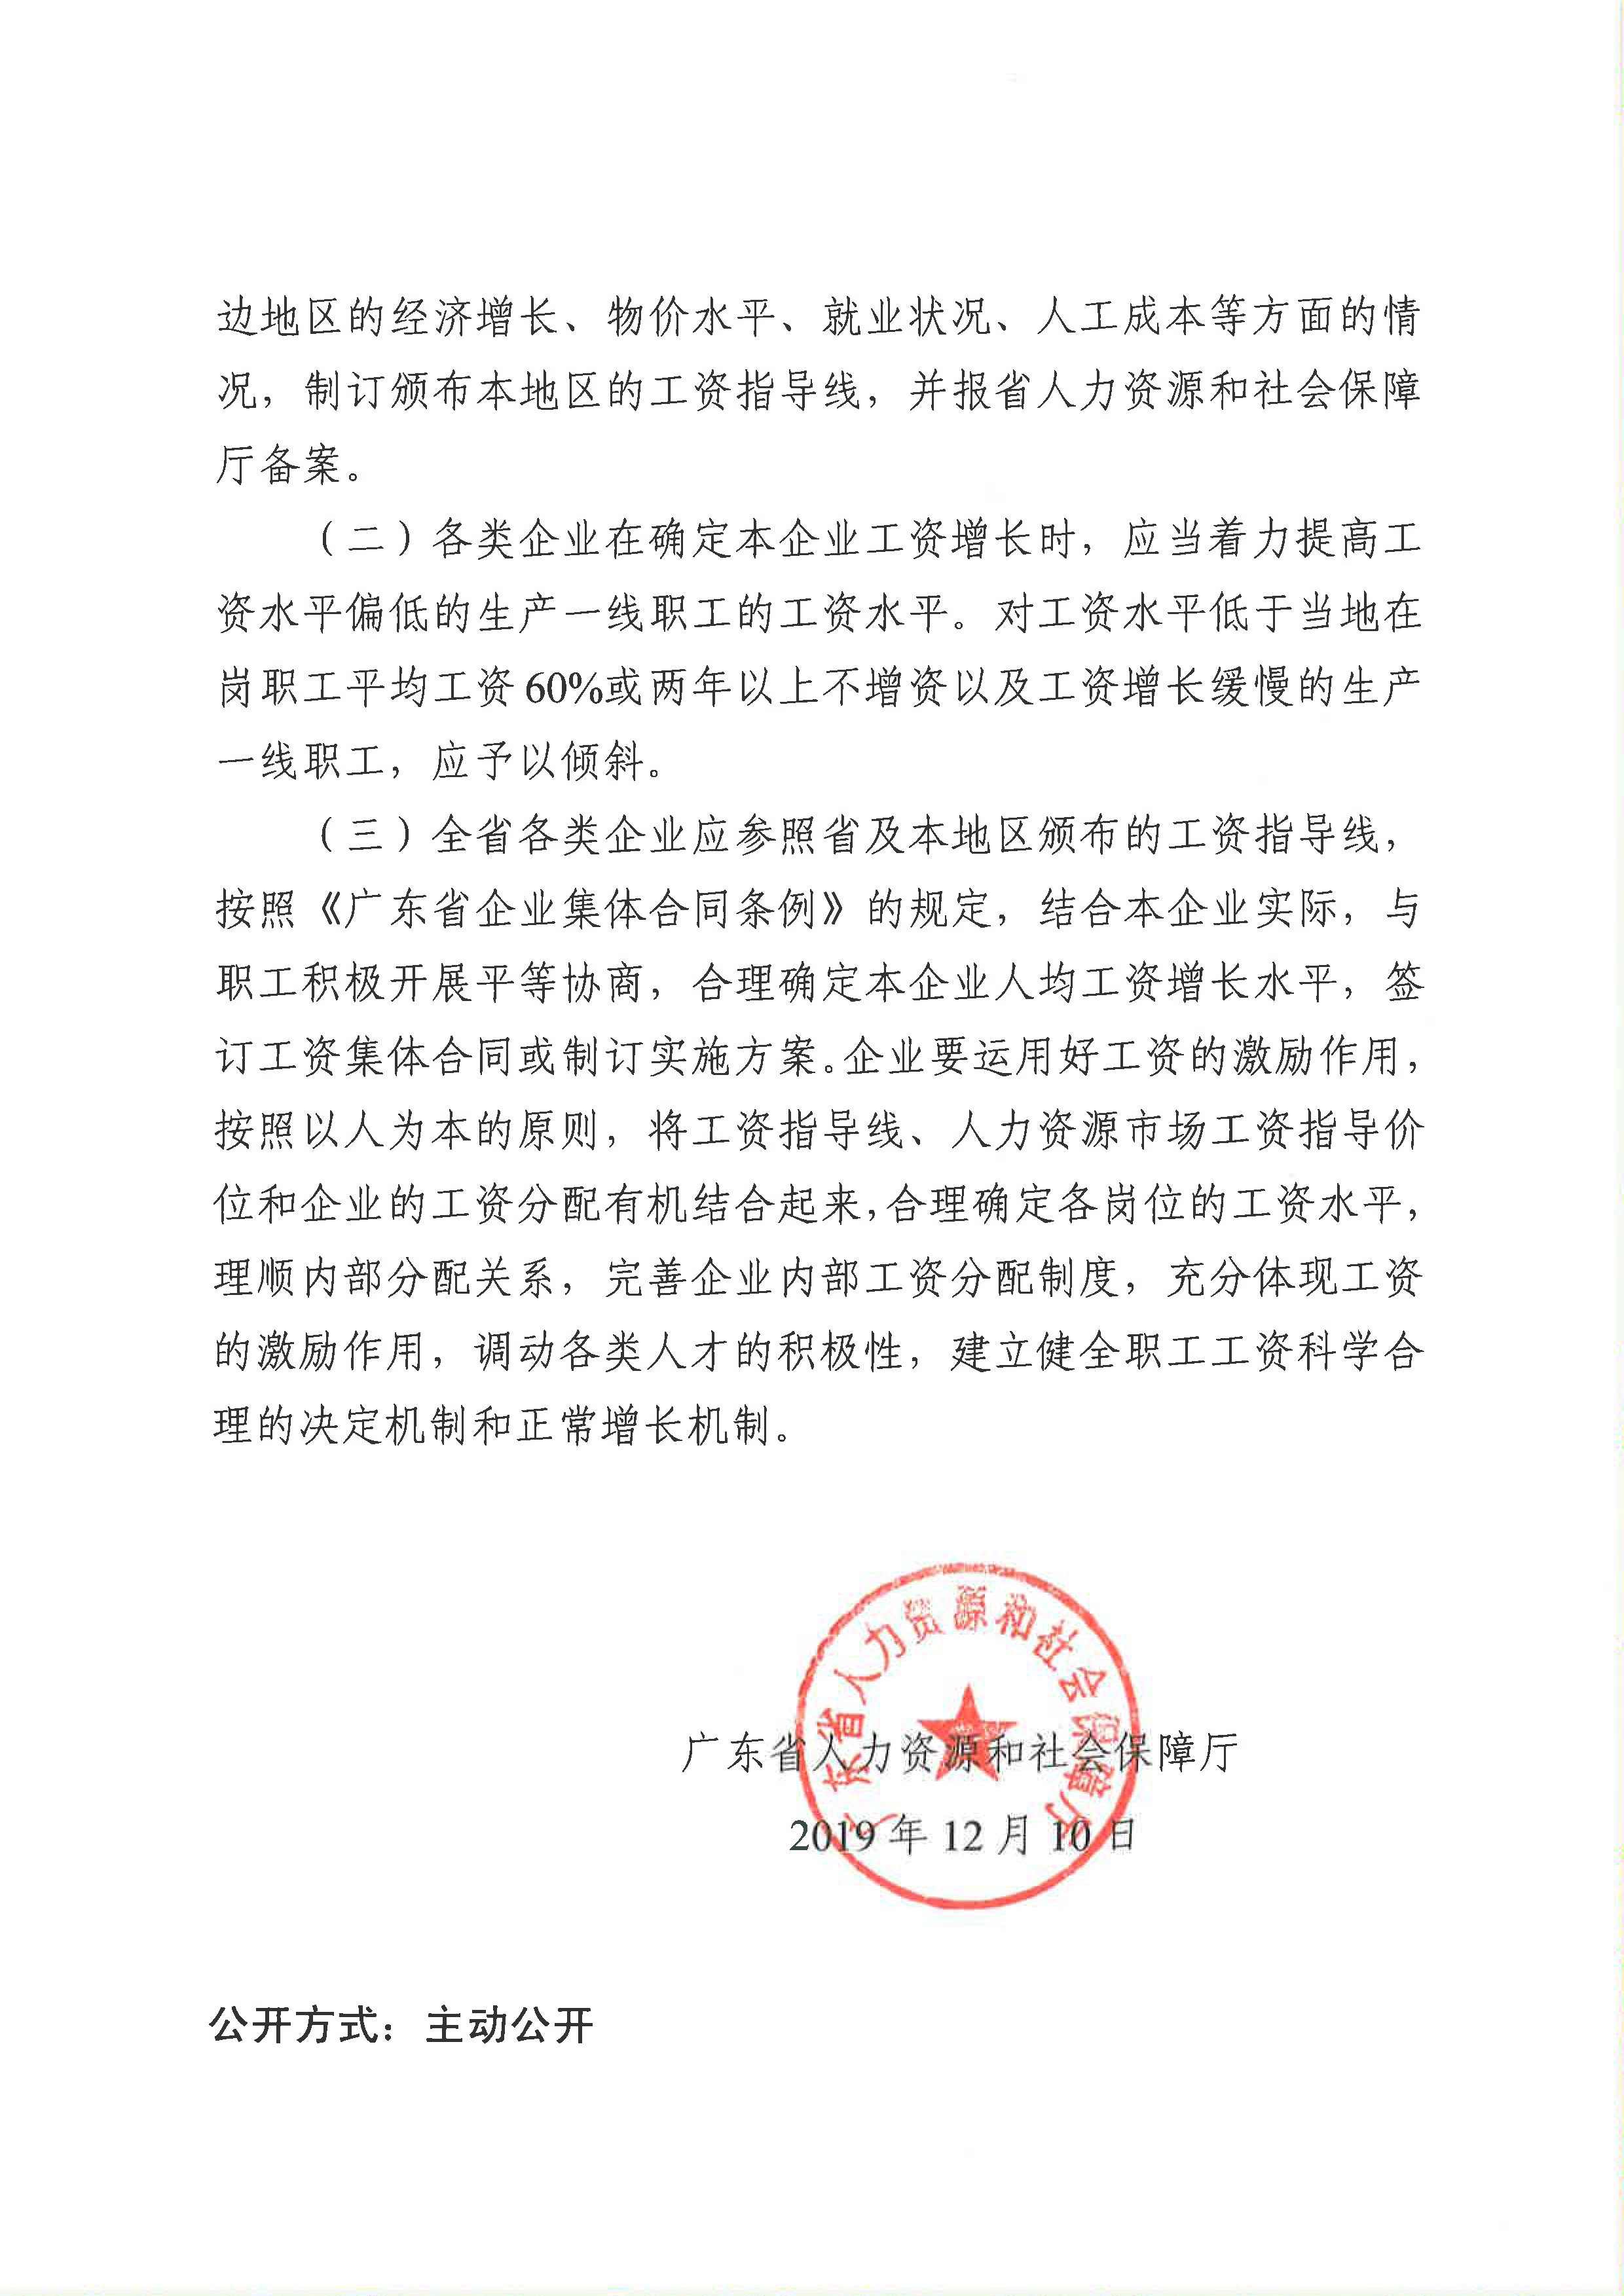 关于公布广东省2019年企业工资指导线的通知_页面_2.png